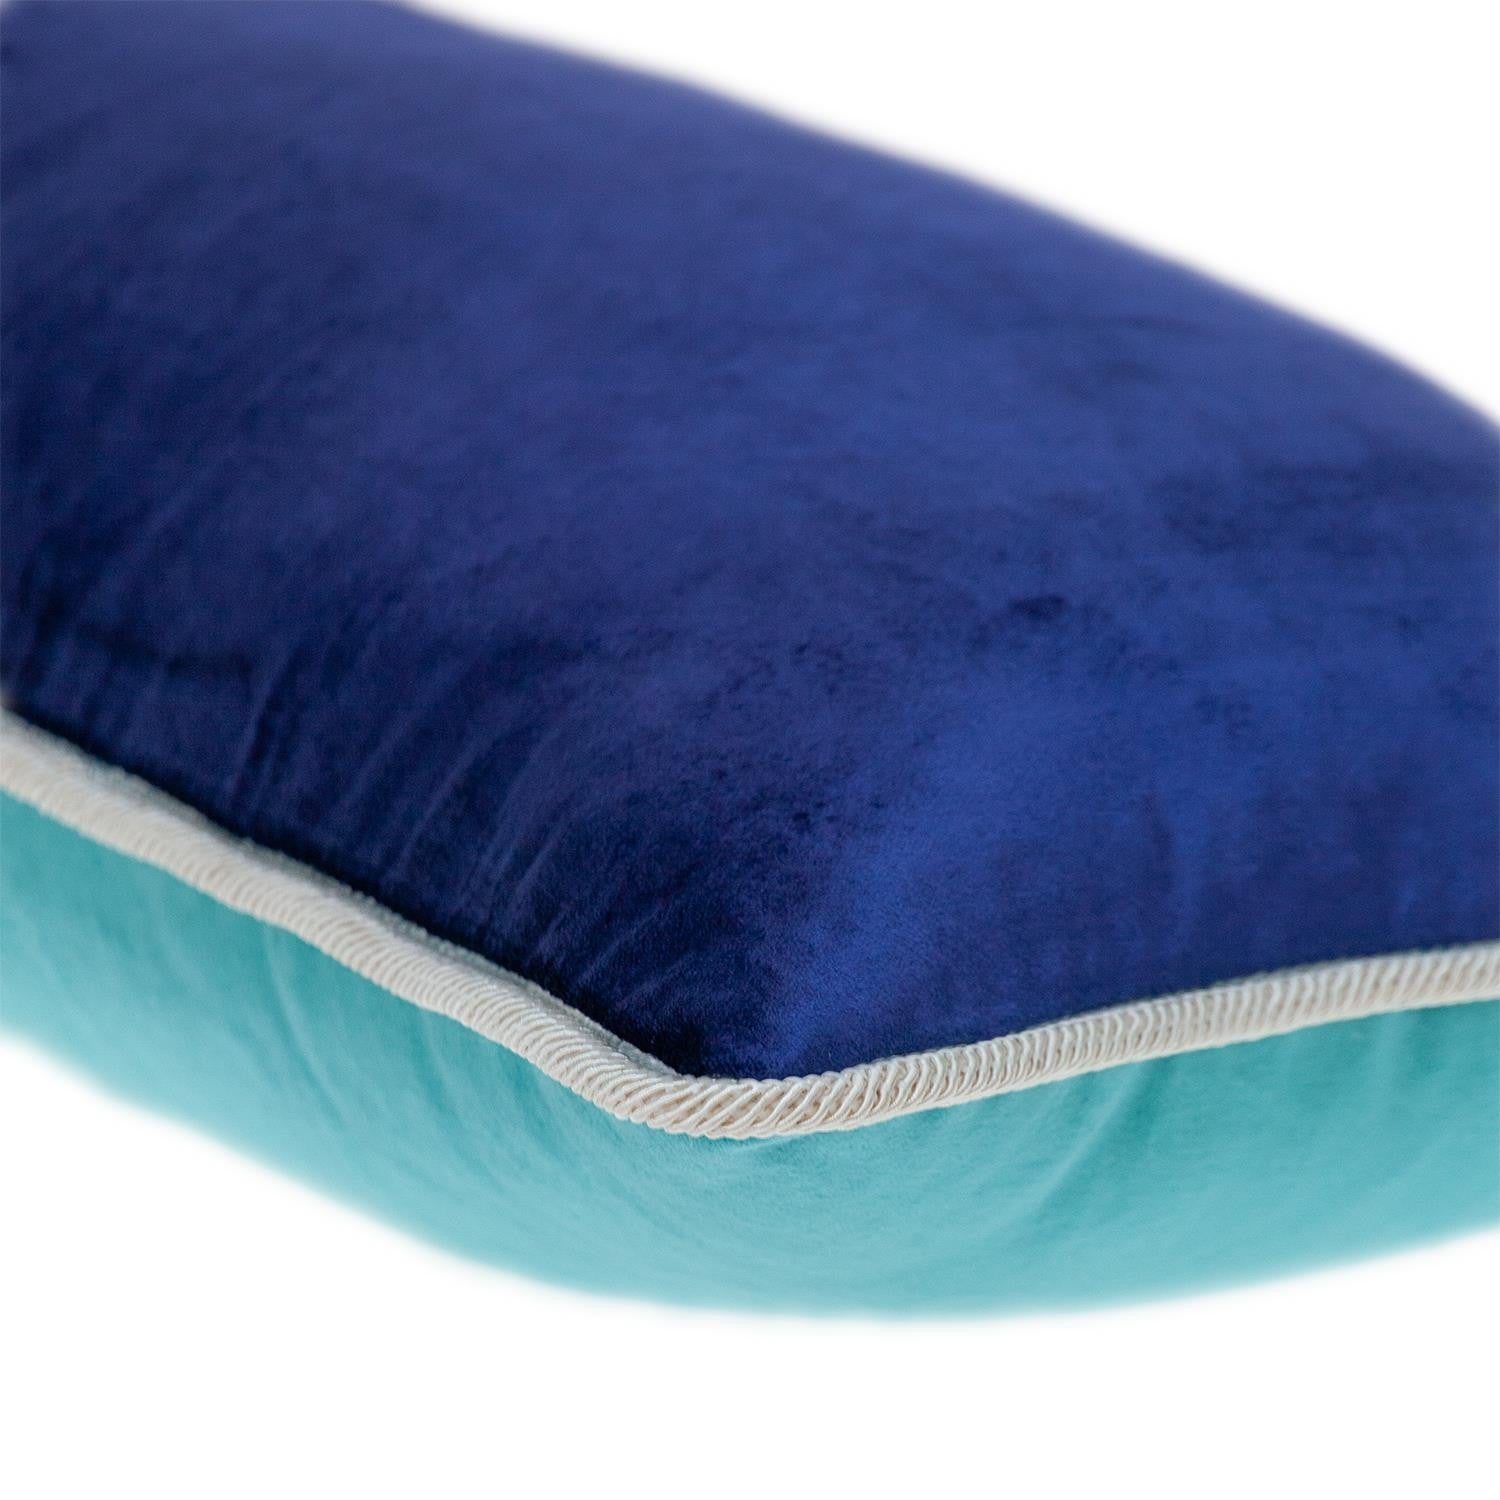 Reversible Royal and Aqua Lumbar Velvet Throw Pillow